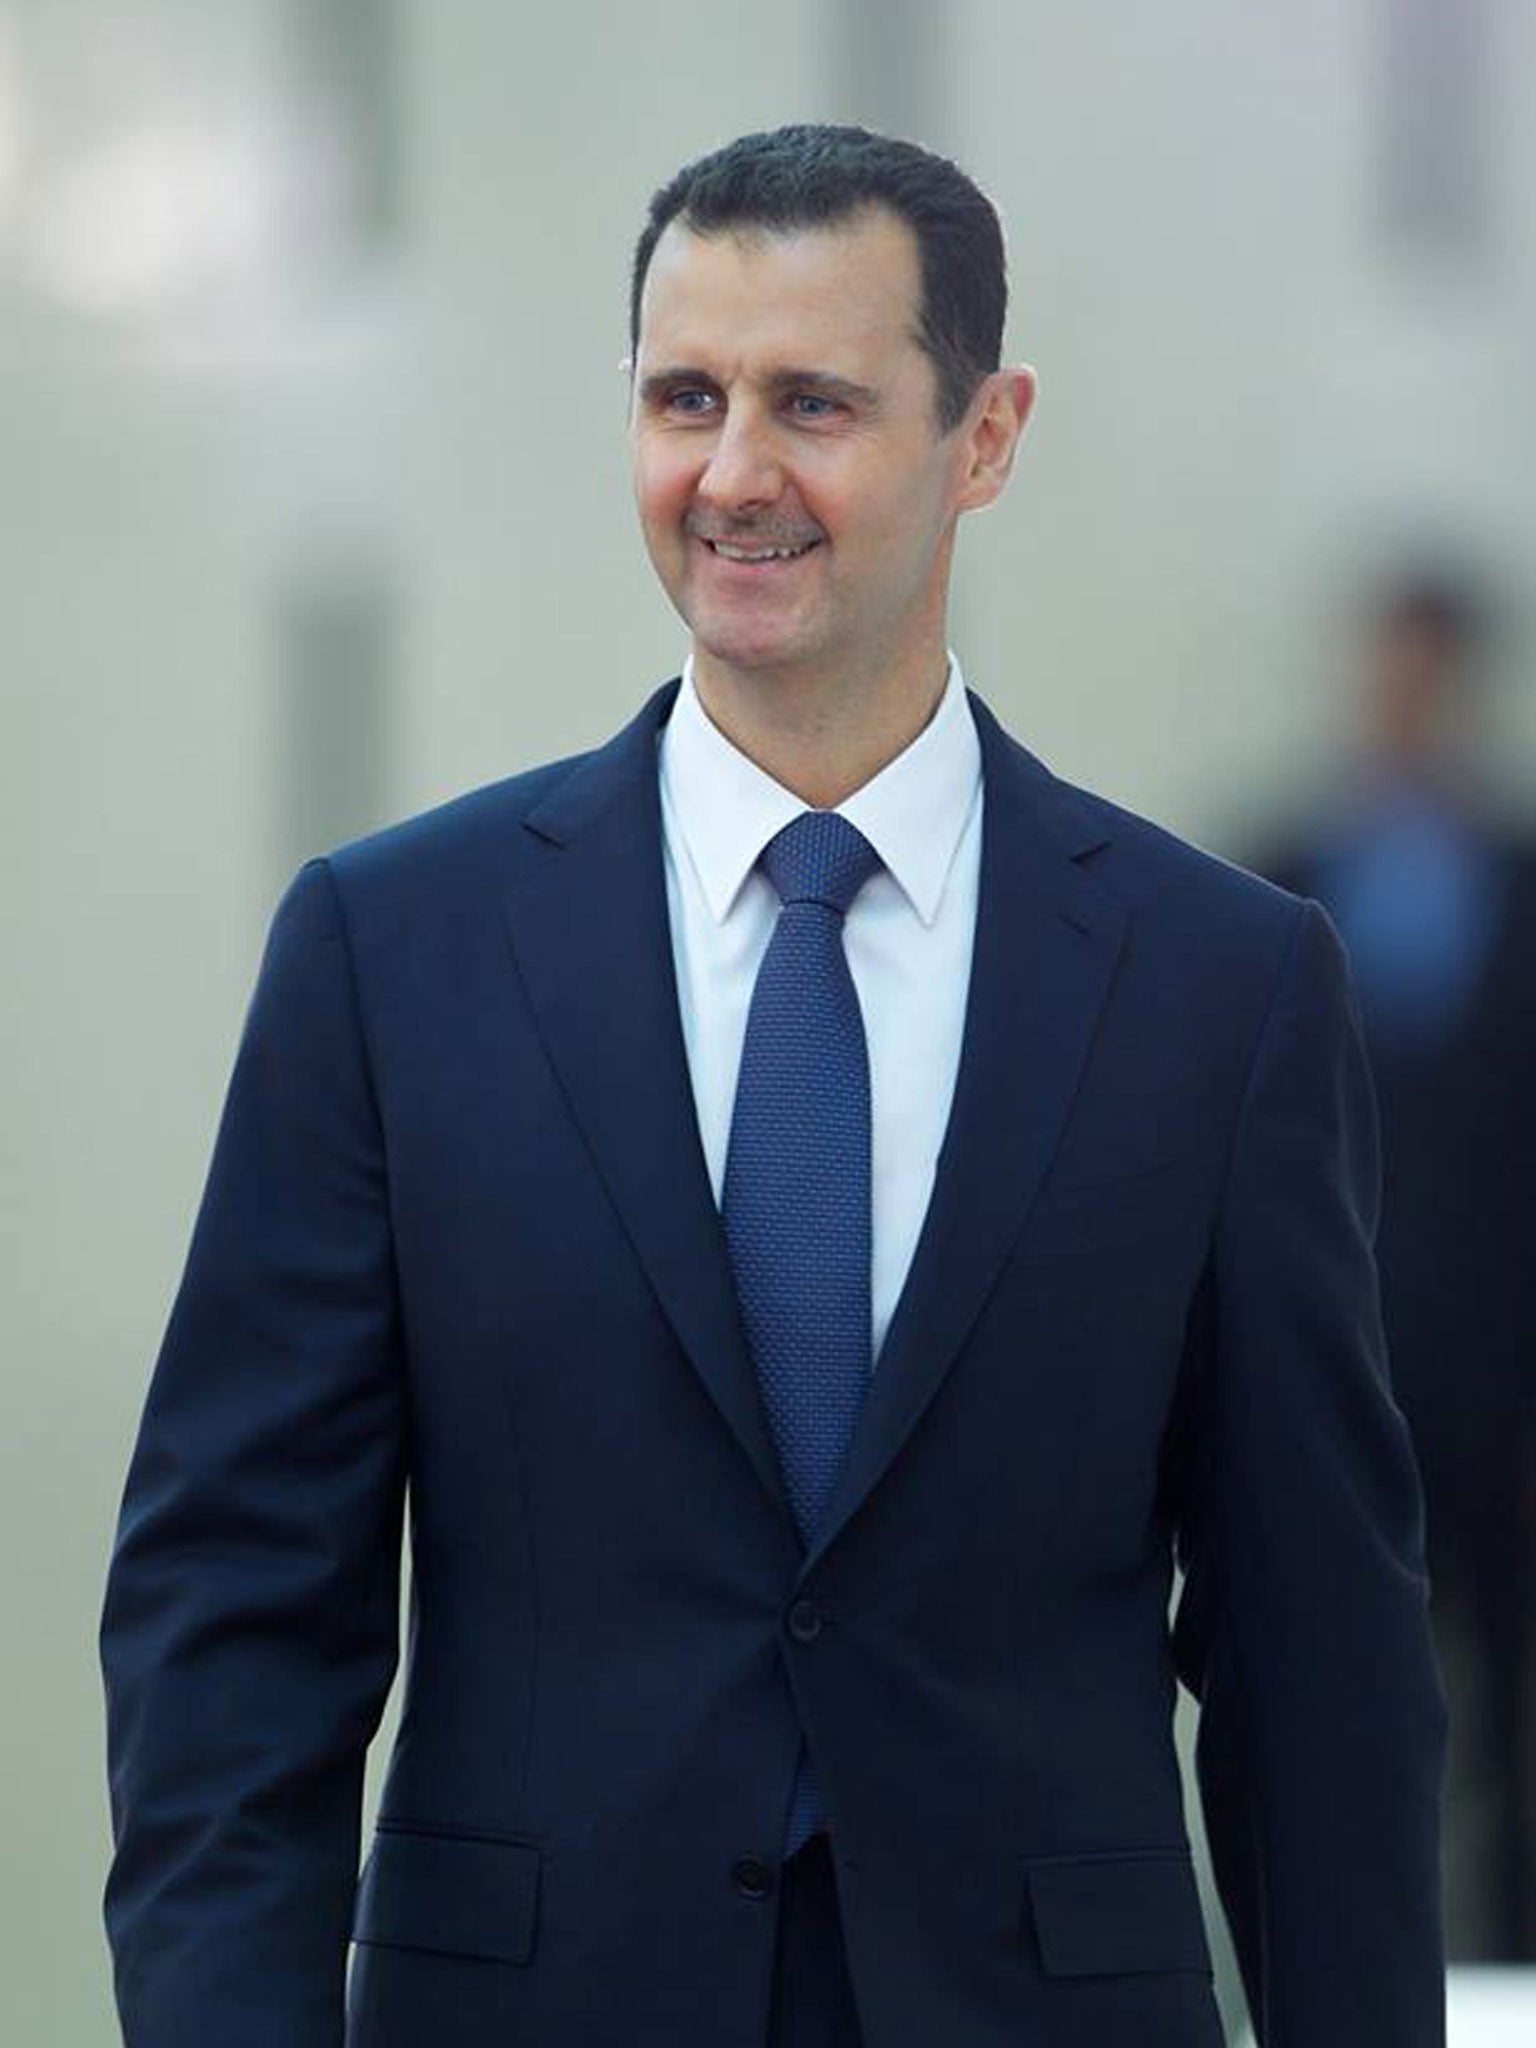 Башар контакте. Башар Асад. Башар Асад портрет. Джиривах Башар. Эмир Ассад.